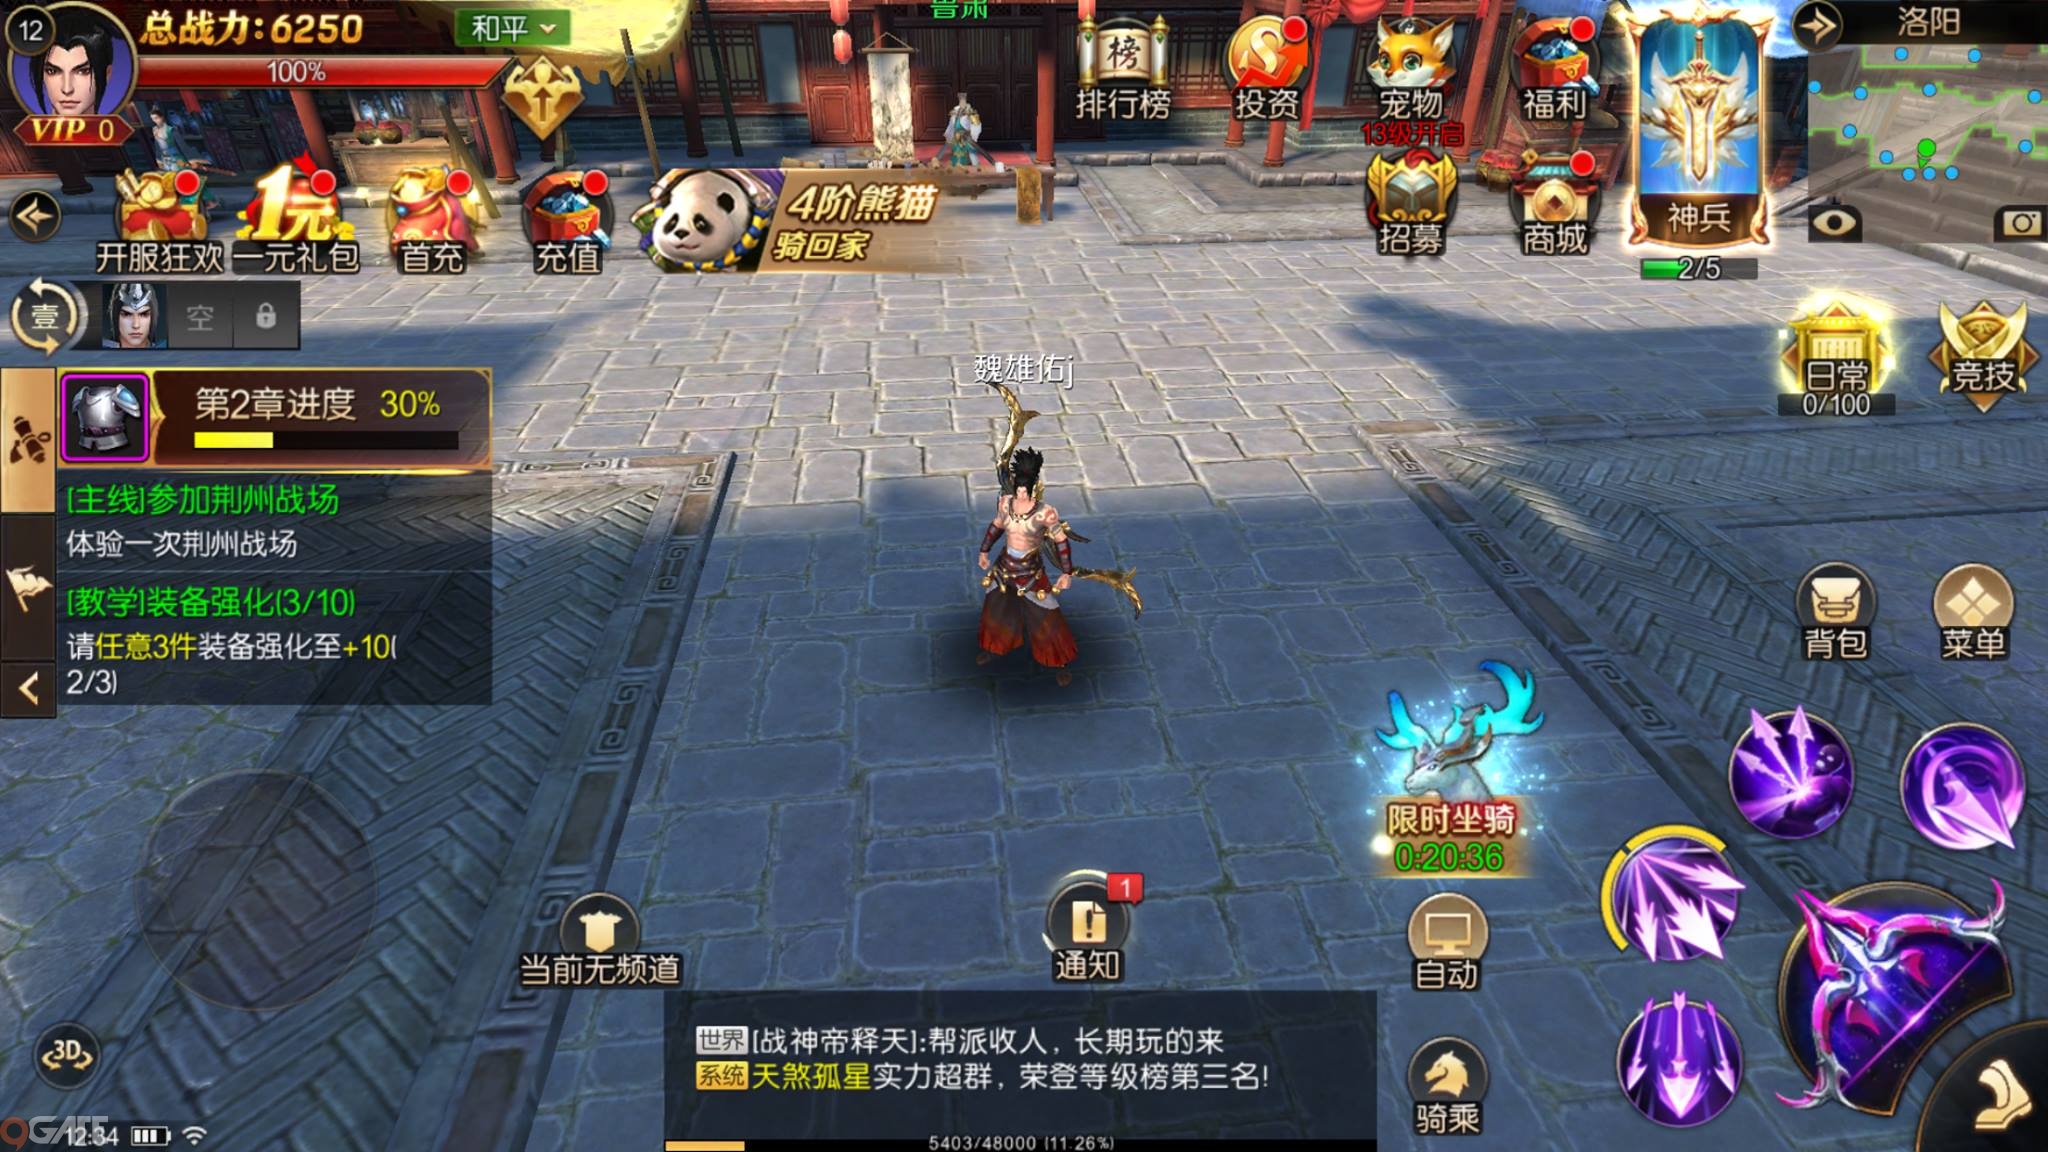 “Song Binh Nhất Mạch” – Đao Kiếm Vô Song Mobile cho phép game thủ cầm cả Cung lẫn Đao lâm trận